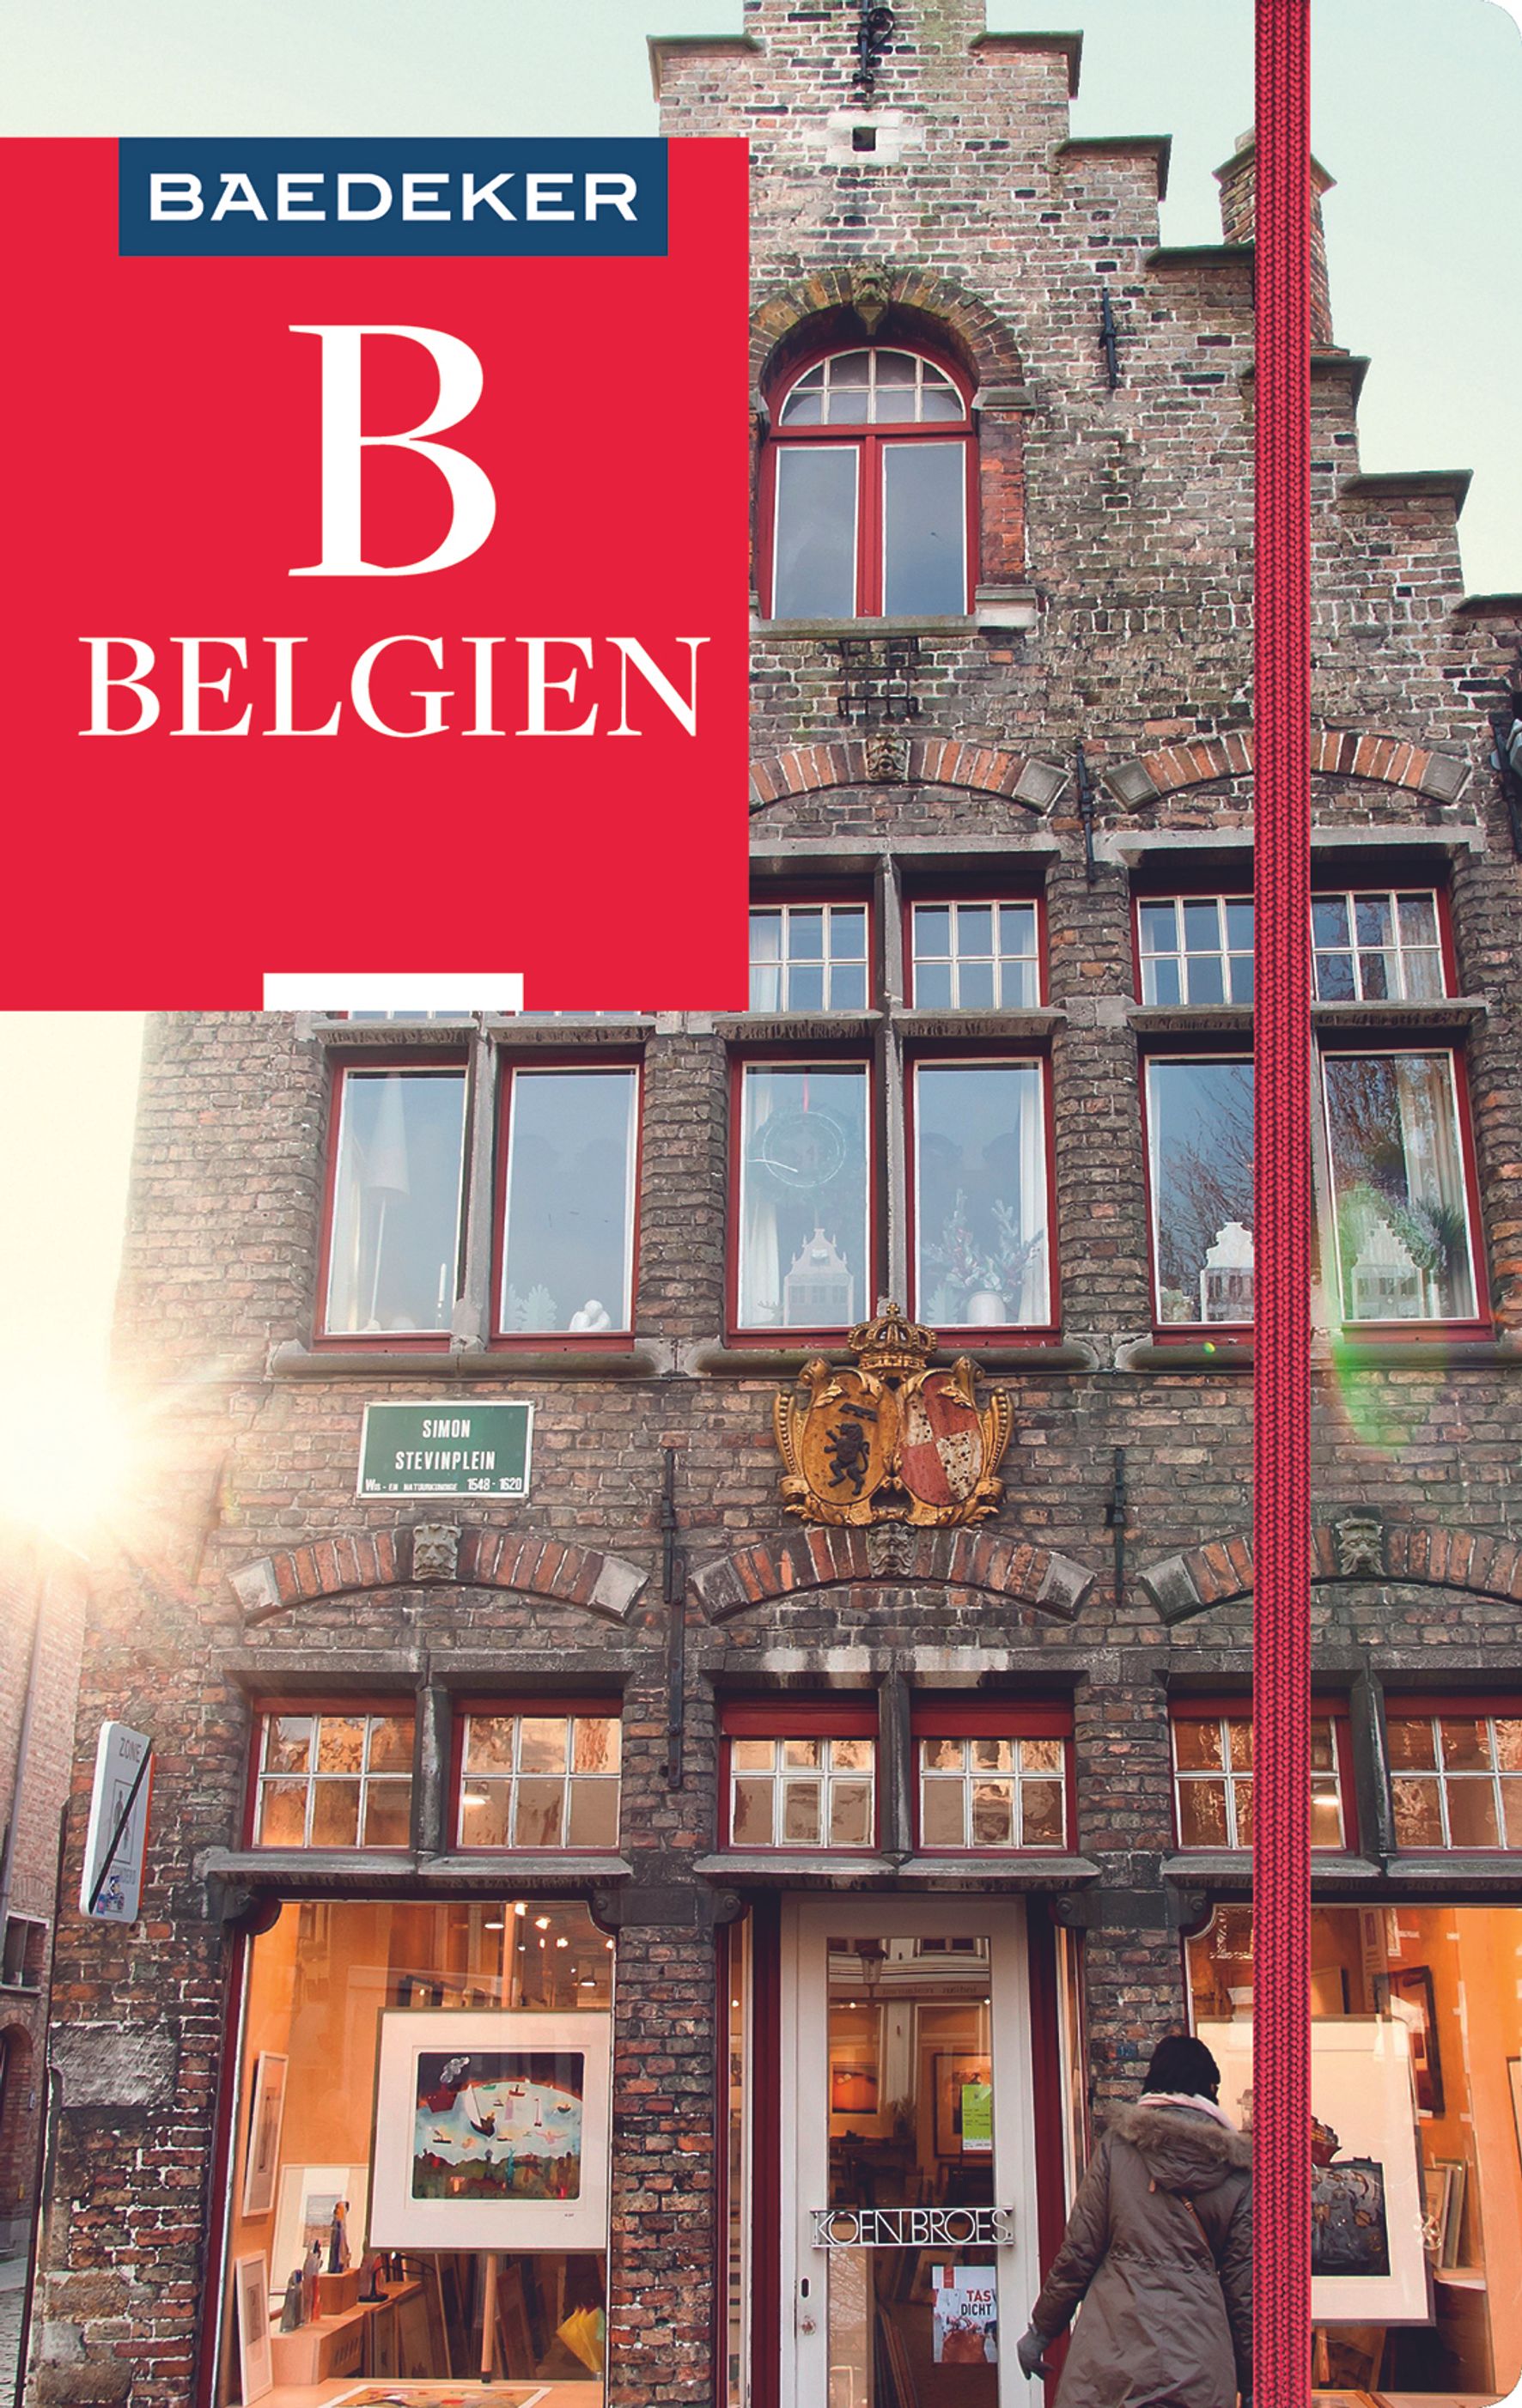 Baedeker Belgien (eBook)